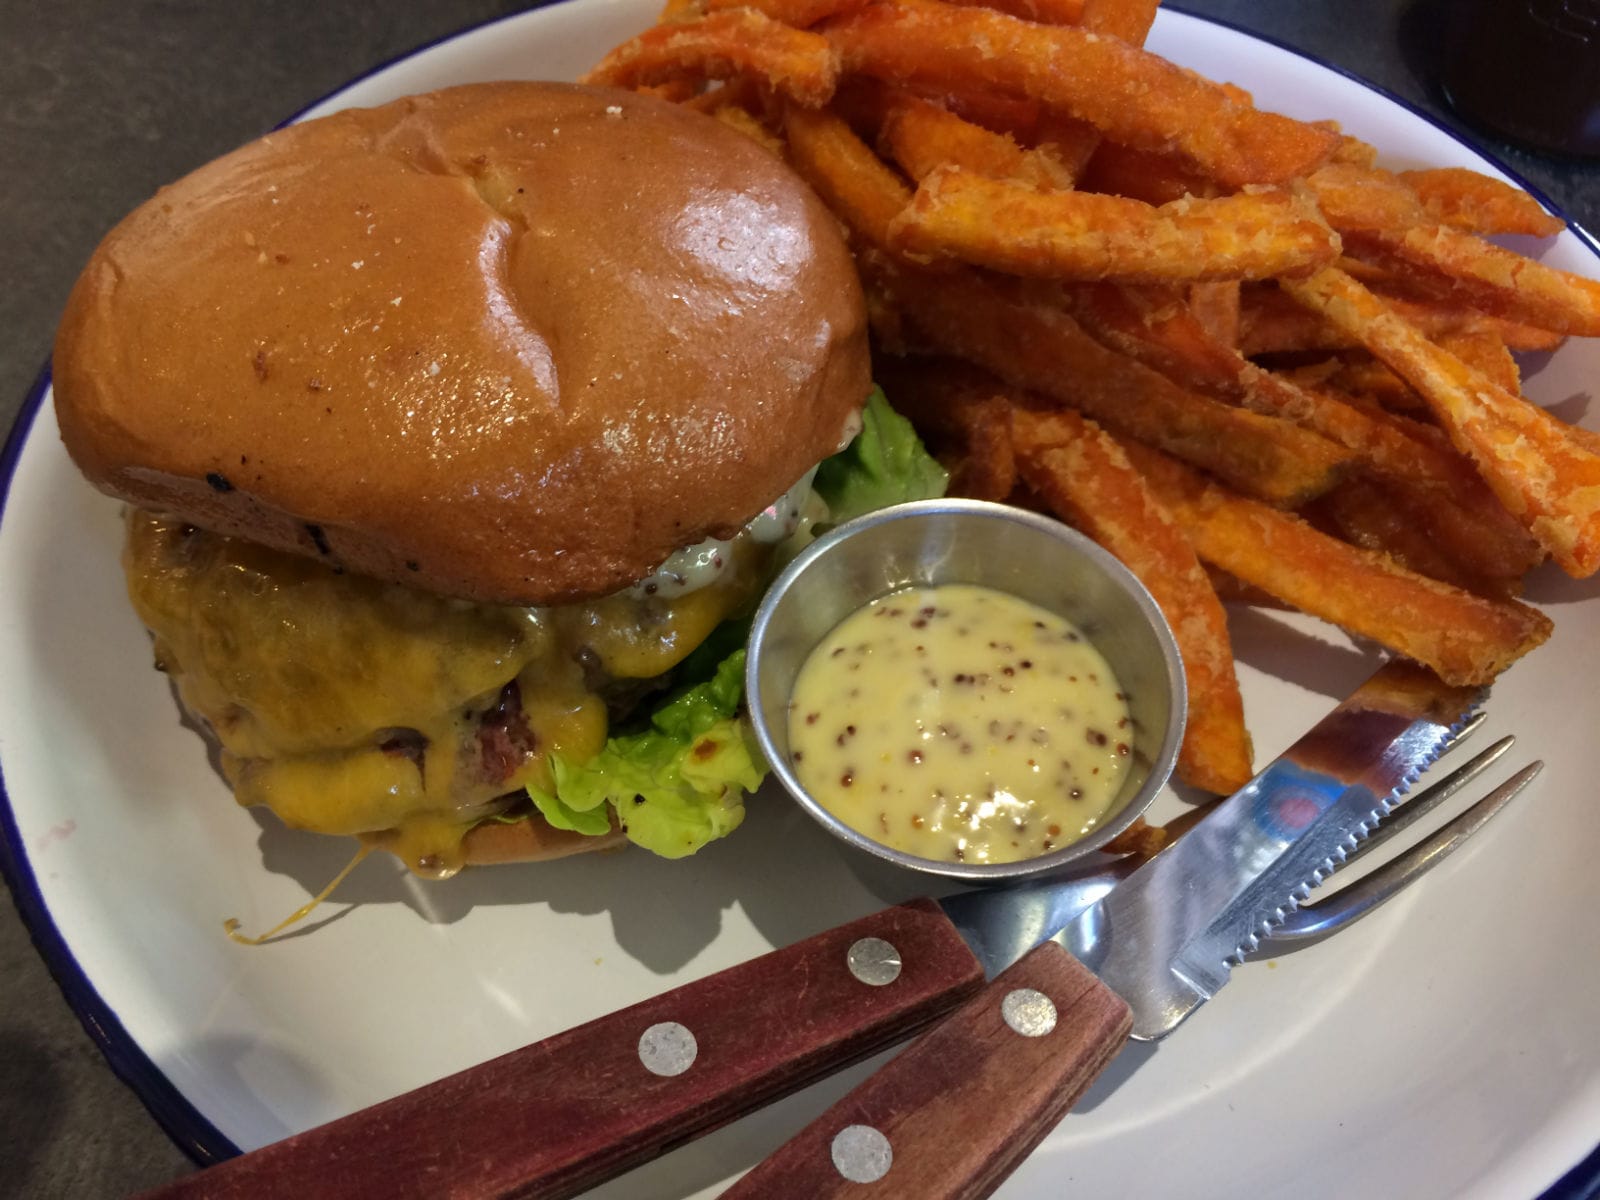 Bei Ottos Burger in Hamburg werden in traditioneller Bar-Atmosphäre gute Burger nach US-Vorbild gebraten: Nicht überladen, dafür mit frischen Zutaten.